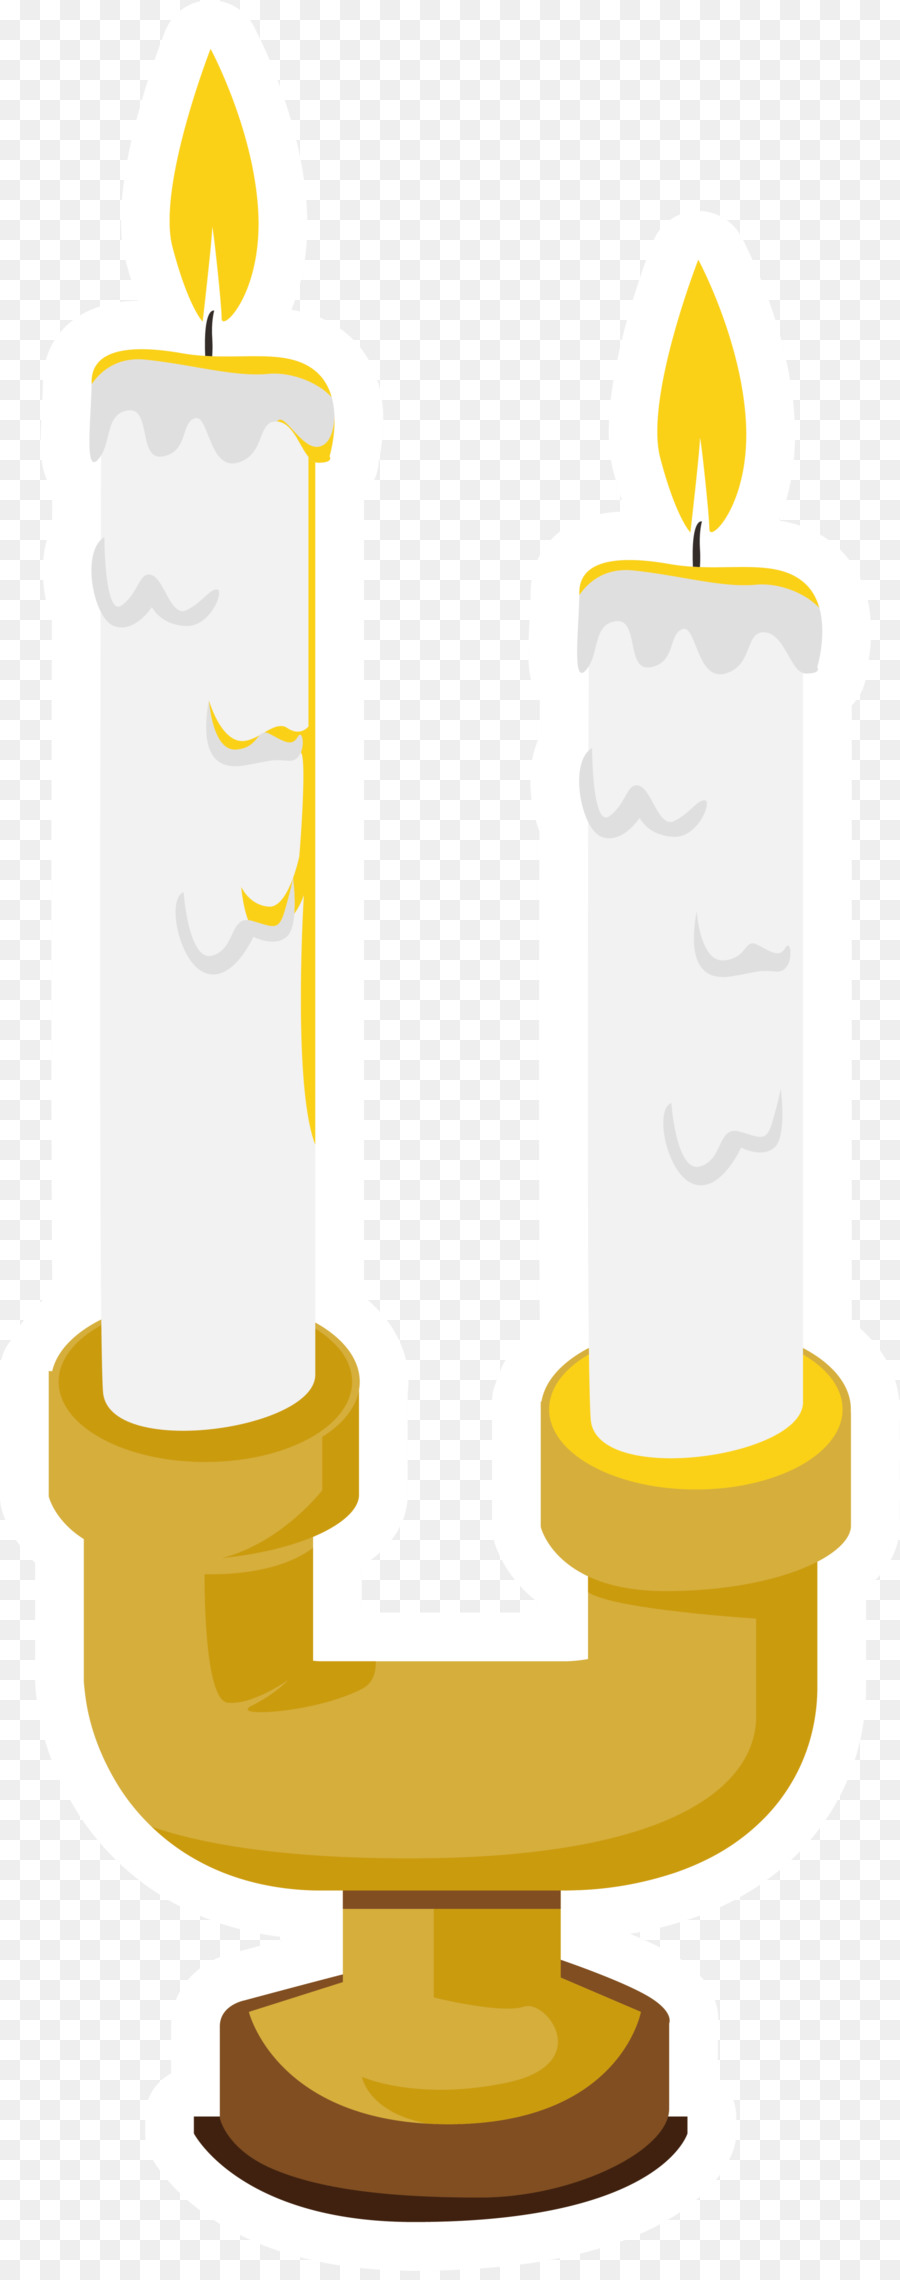 Giallo Disegno Clip art - giallo cartoon candela